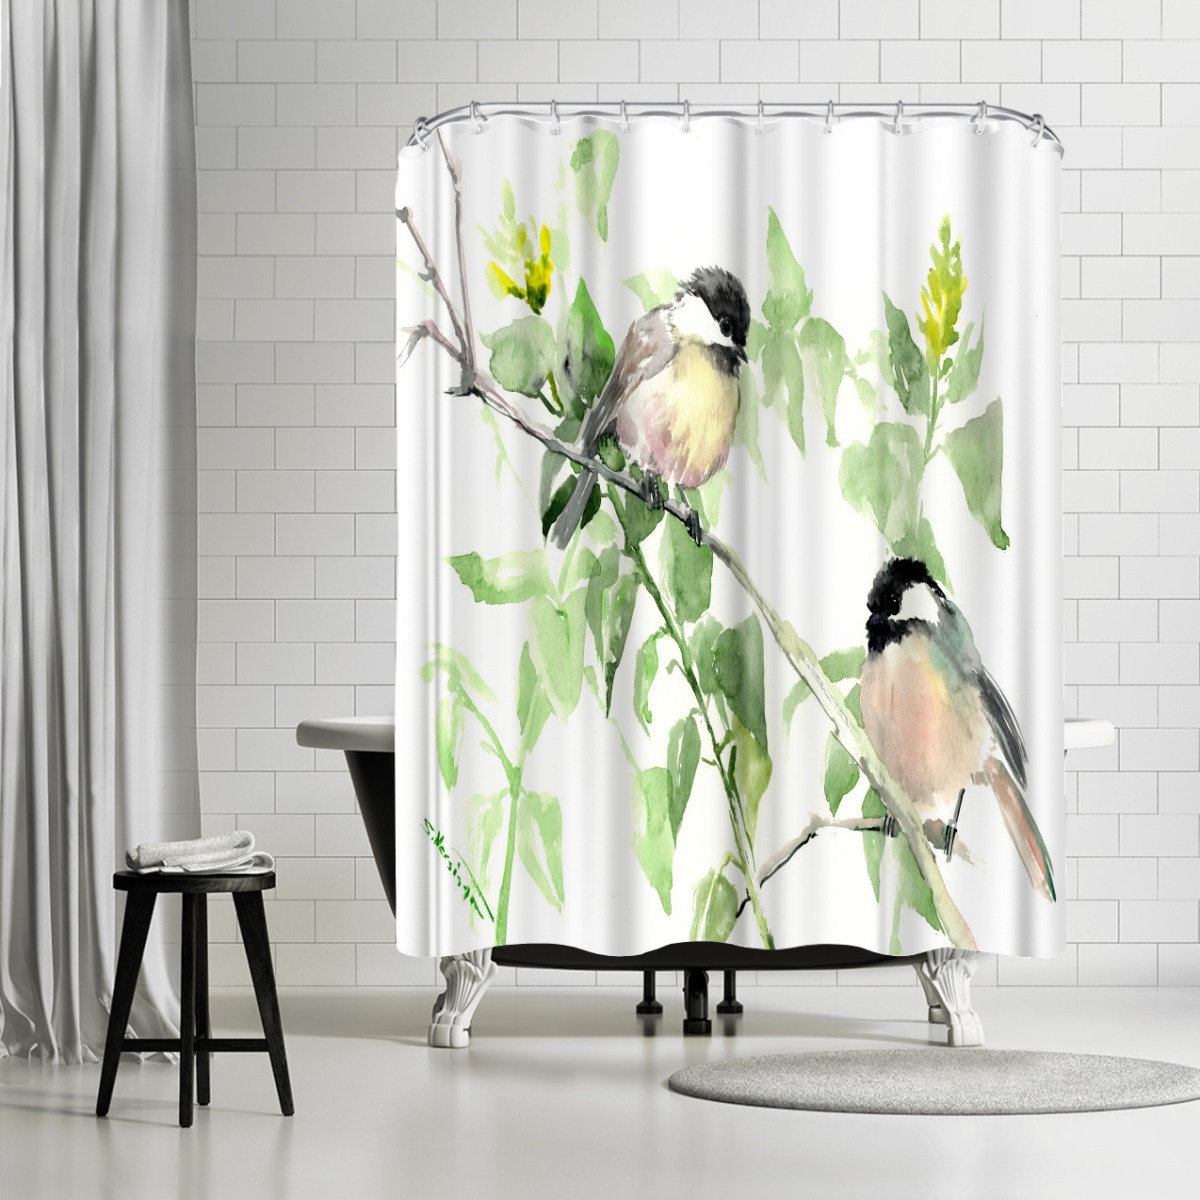 Bless international 71 x 74 Shower Curtain, Chickadees by Suren Nersisyan